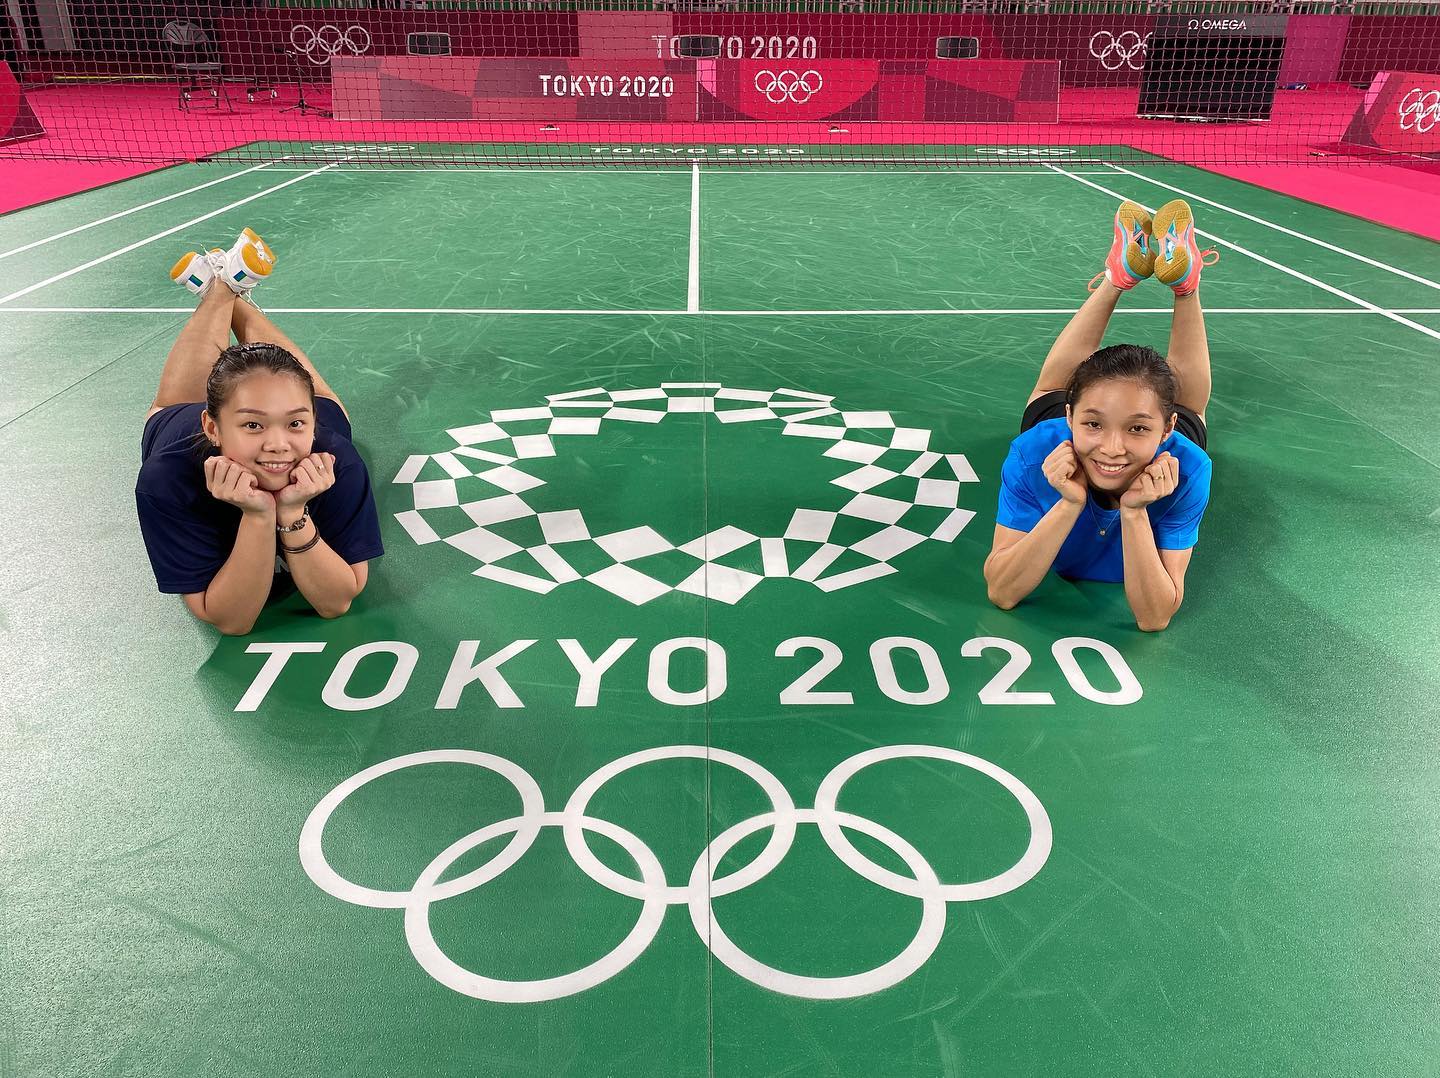 由于周六一早就有重要战役，邹美君（右）与李明晏将不会出席东京奥运会开幕式，以好好休息，她们在羽球揭幕战将硬碰格蕾茜雅与阿布丽雅妮。（李明晏脸书照片）

